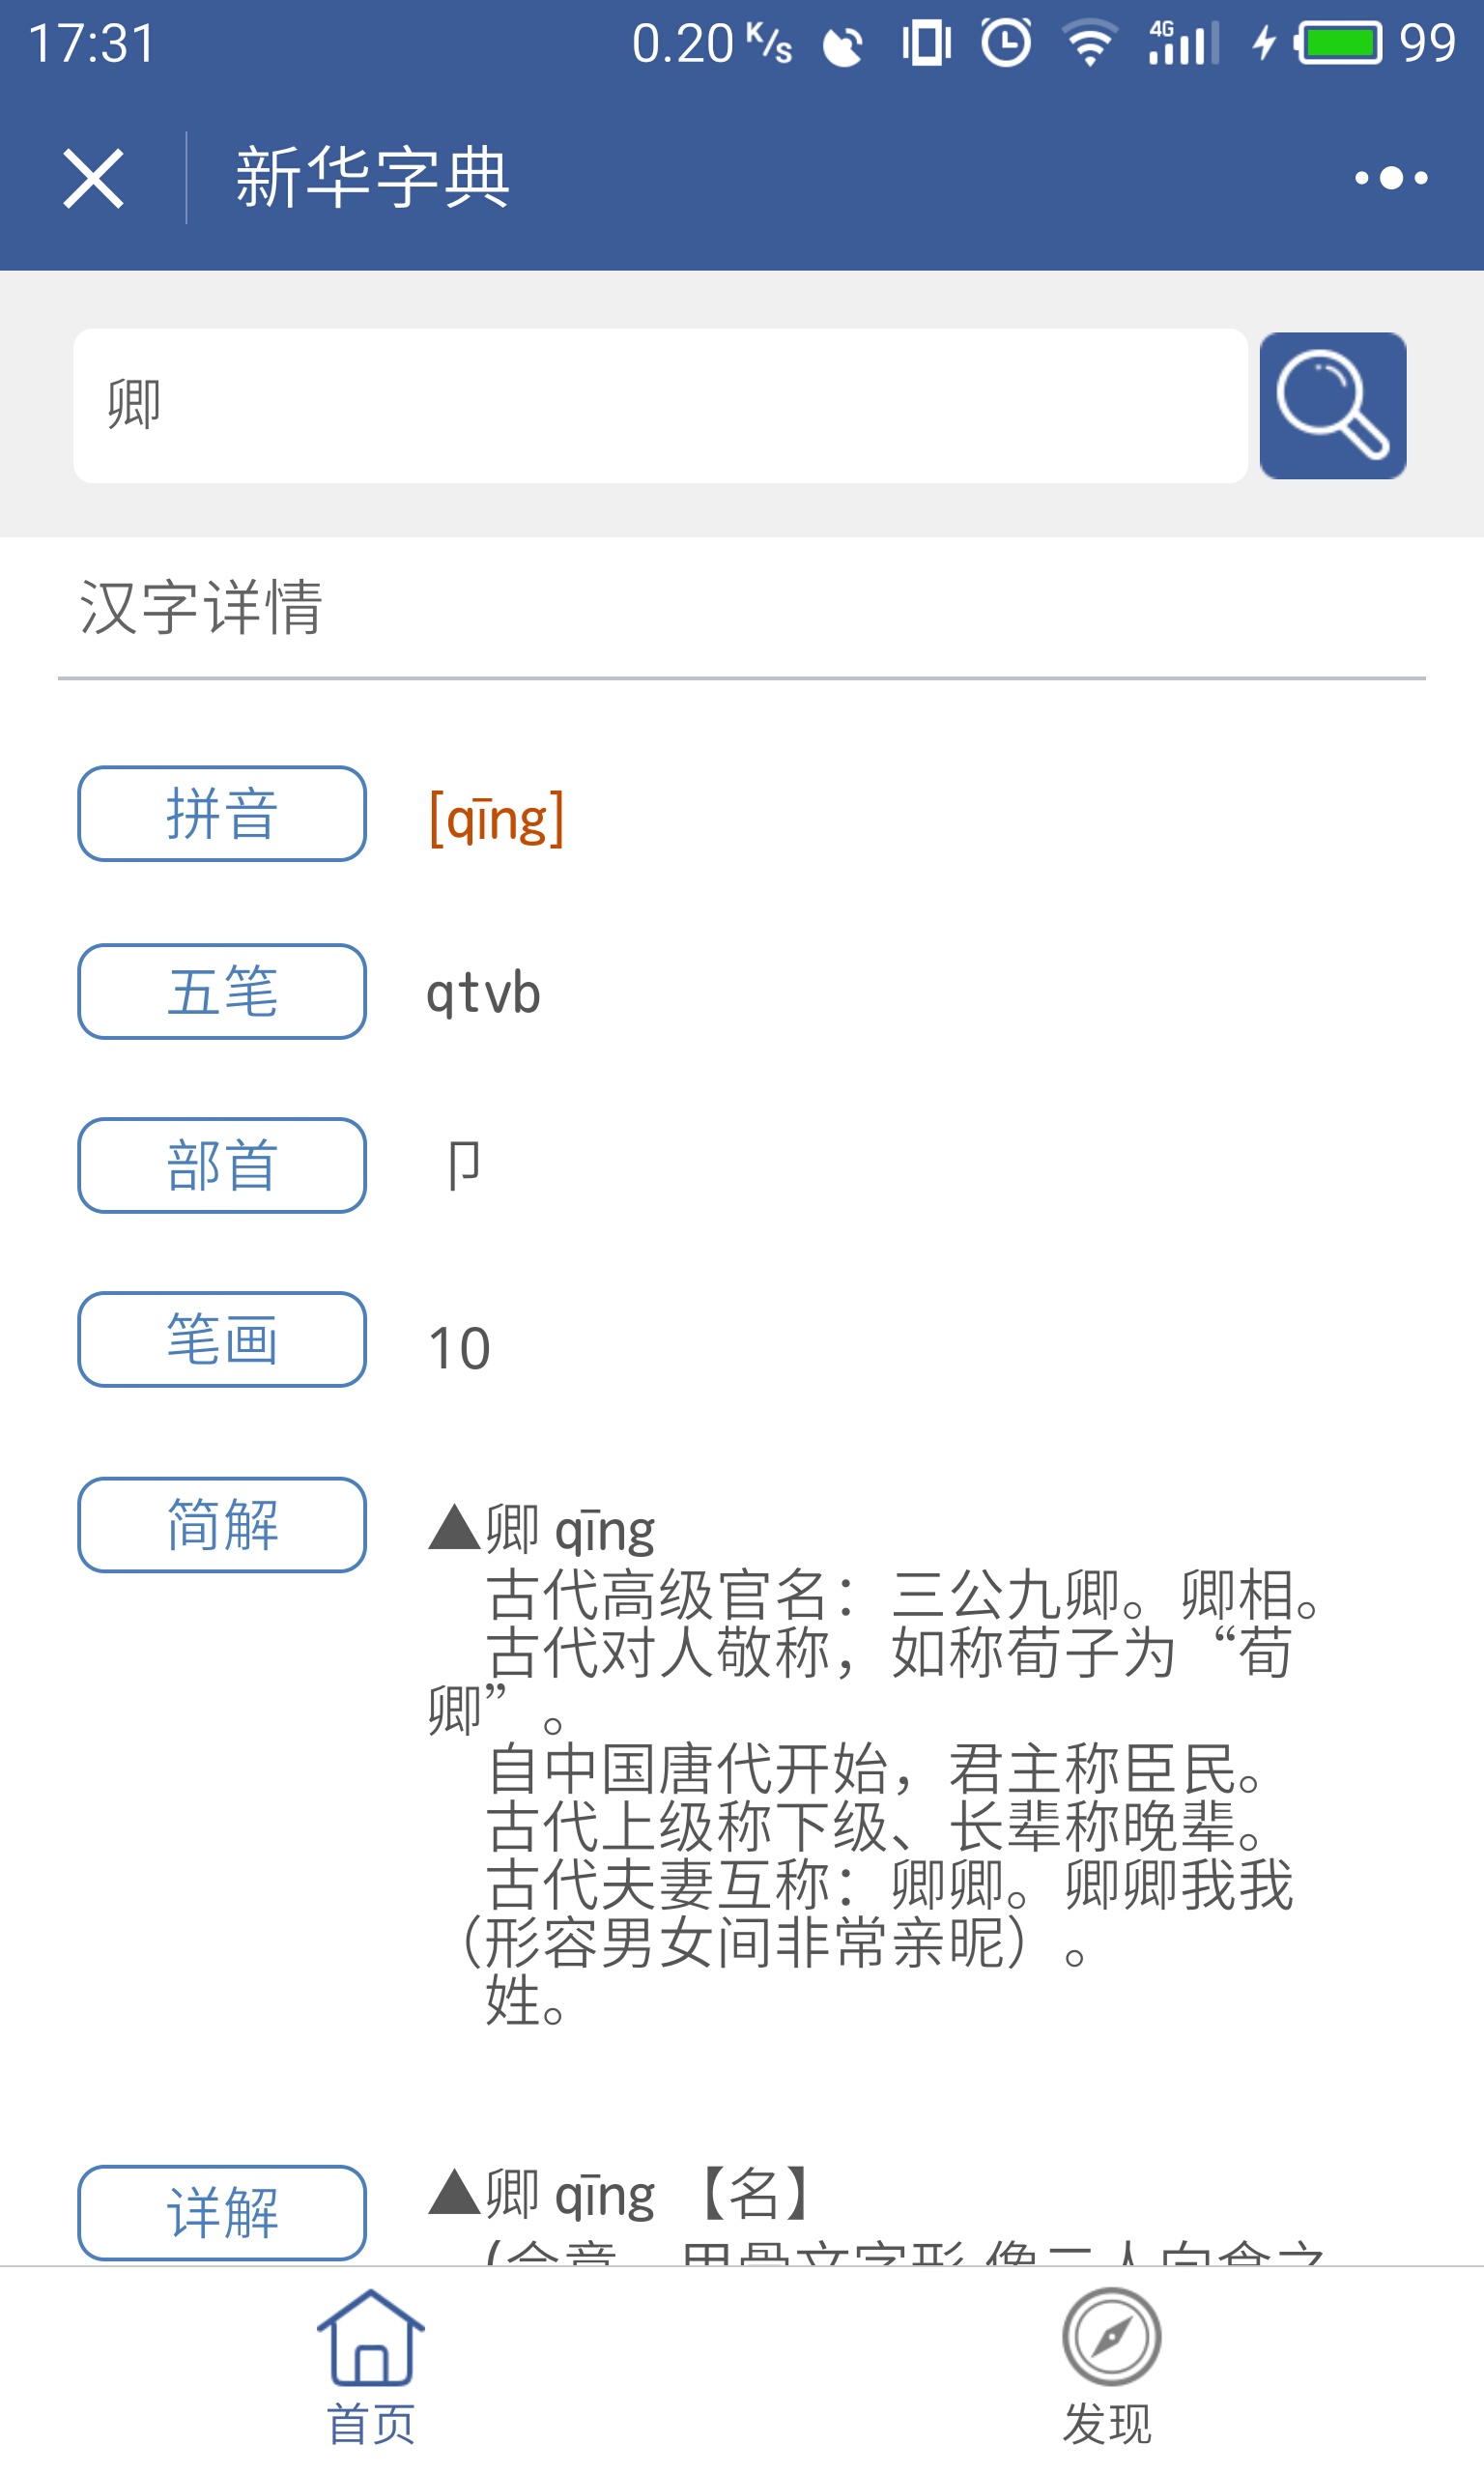 新华字典有道汉语汉字拼音词典